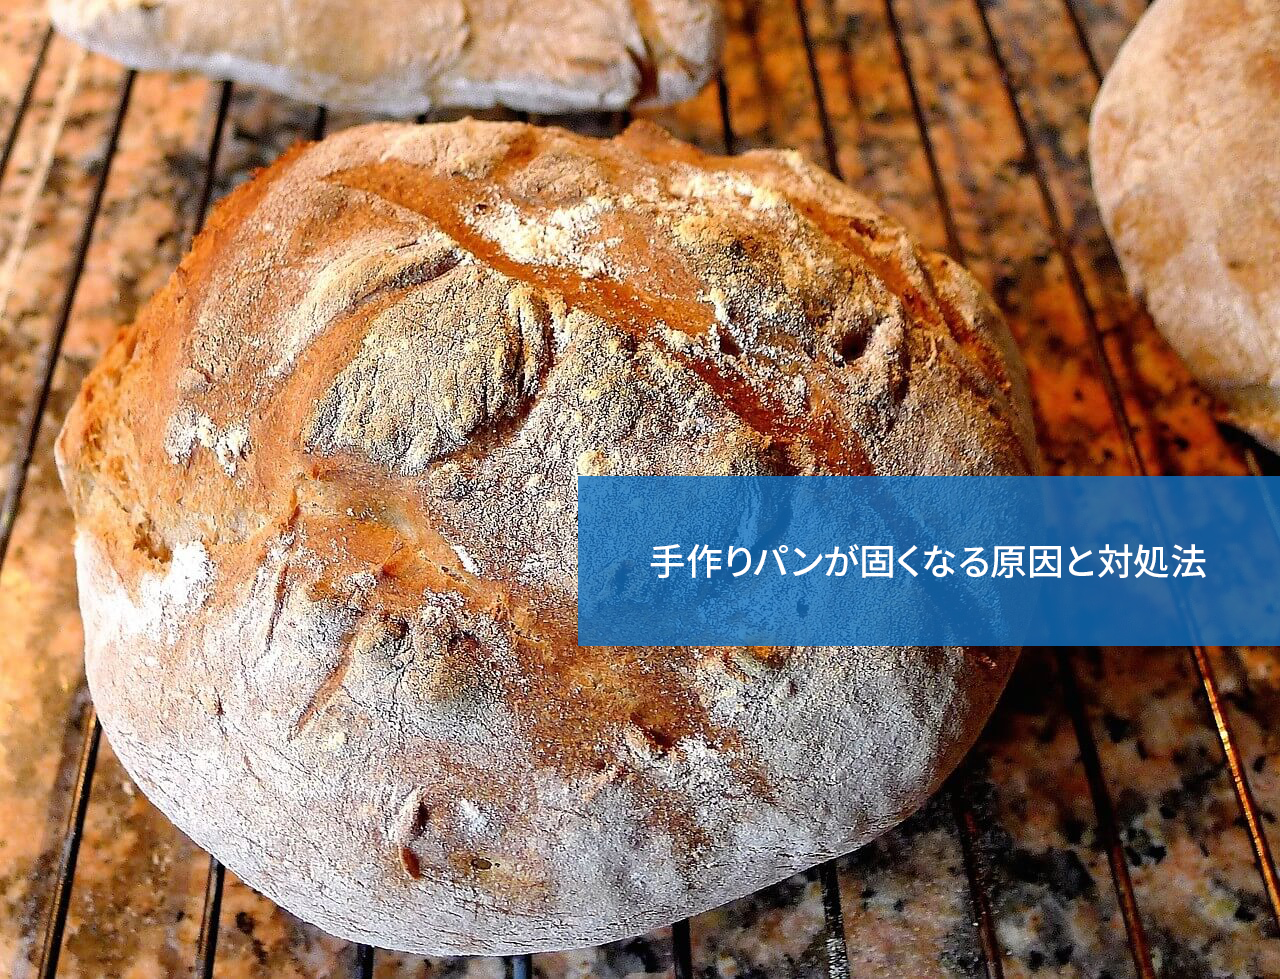 なぜうまくいかない 手作りパンが固くなる原因と対処法 手作りパン資格取得検定講座